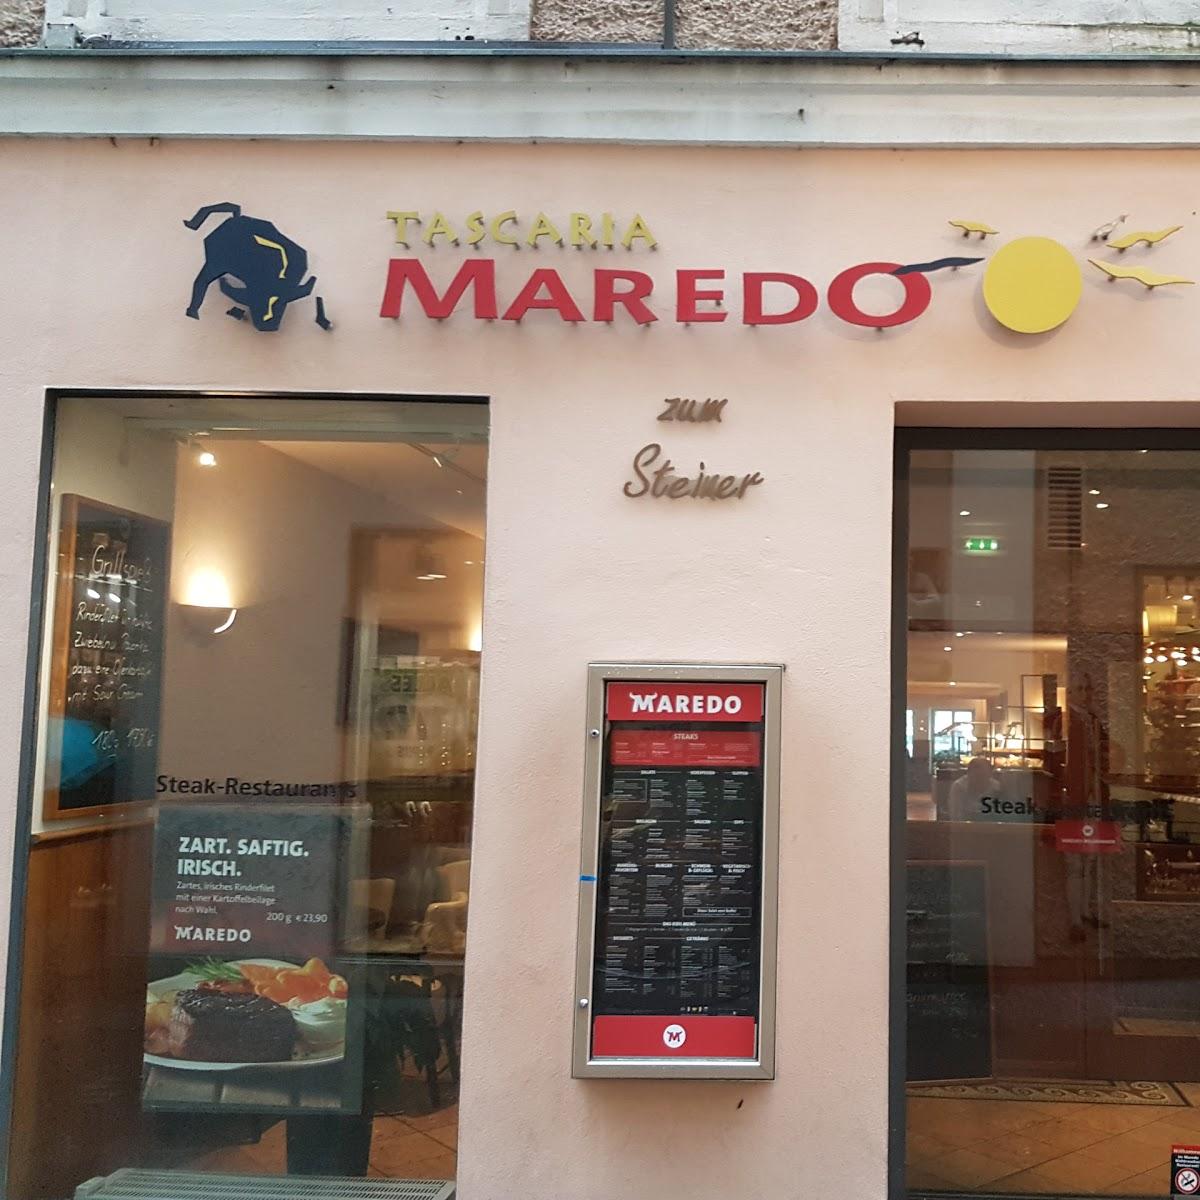 Restaurant "MAREDO" in Salzburg